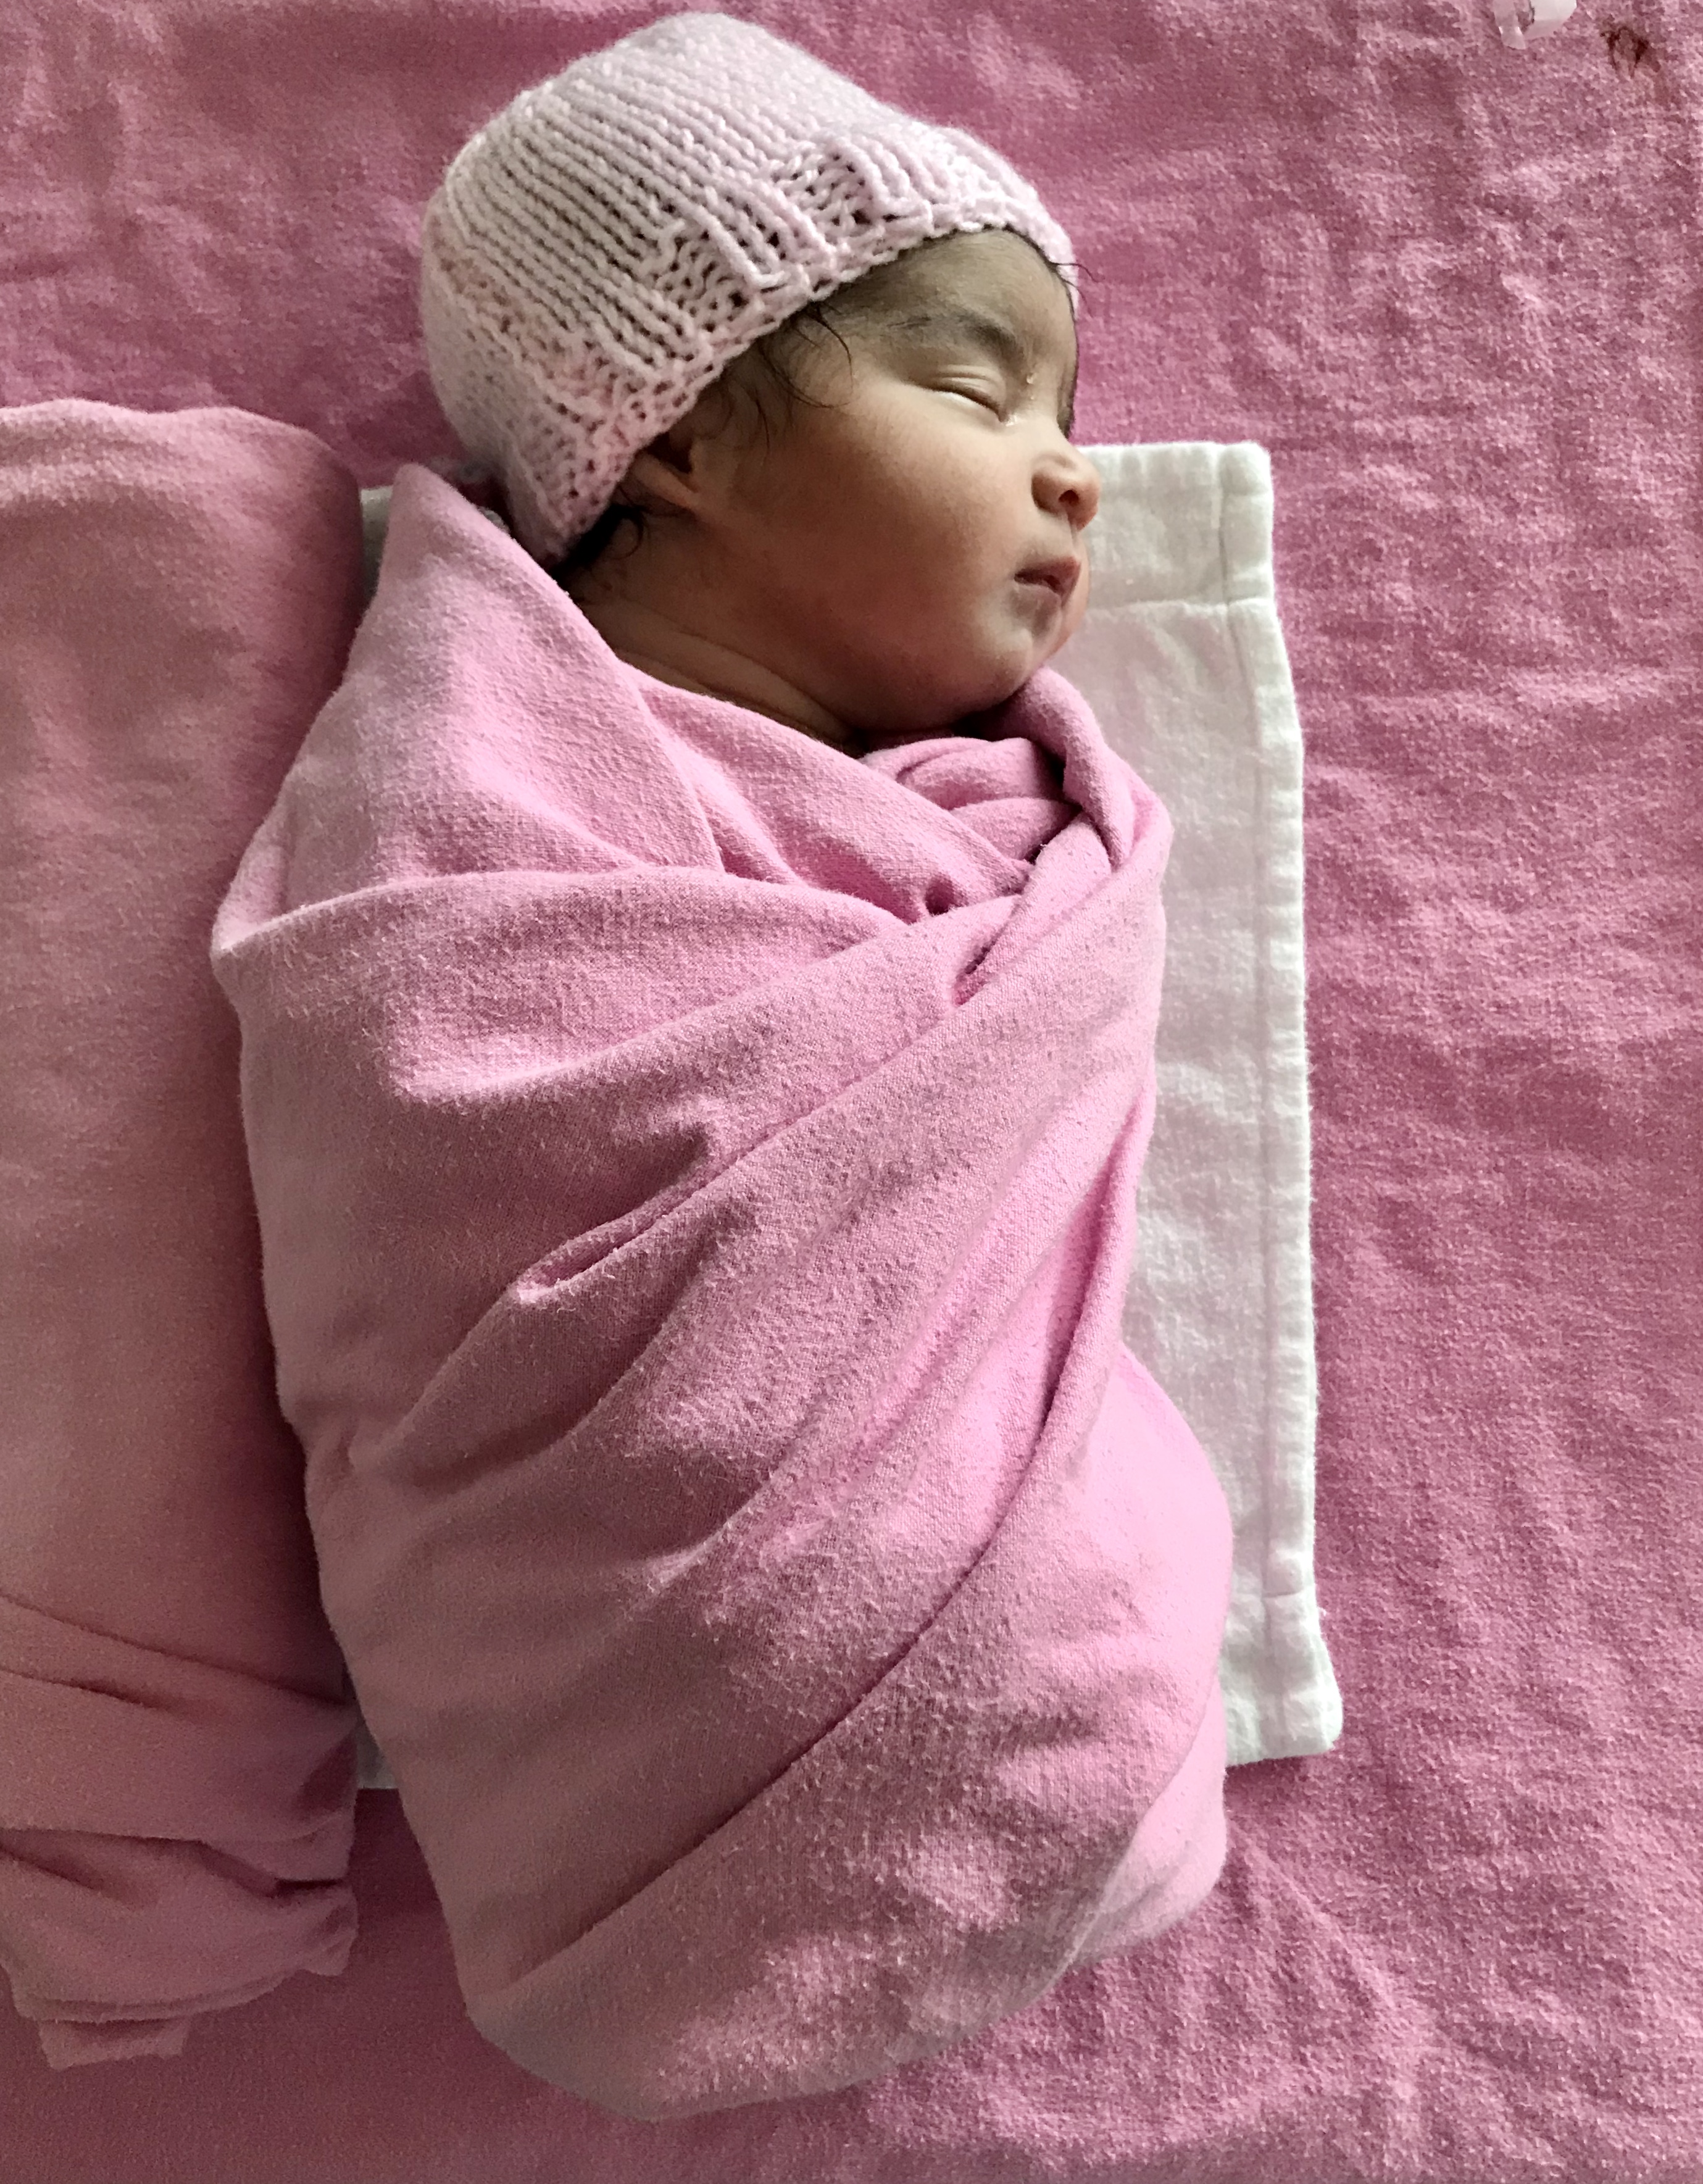 Baby Zoya immediately after birth